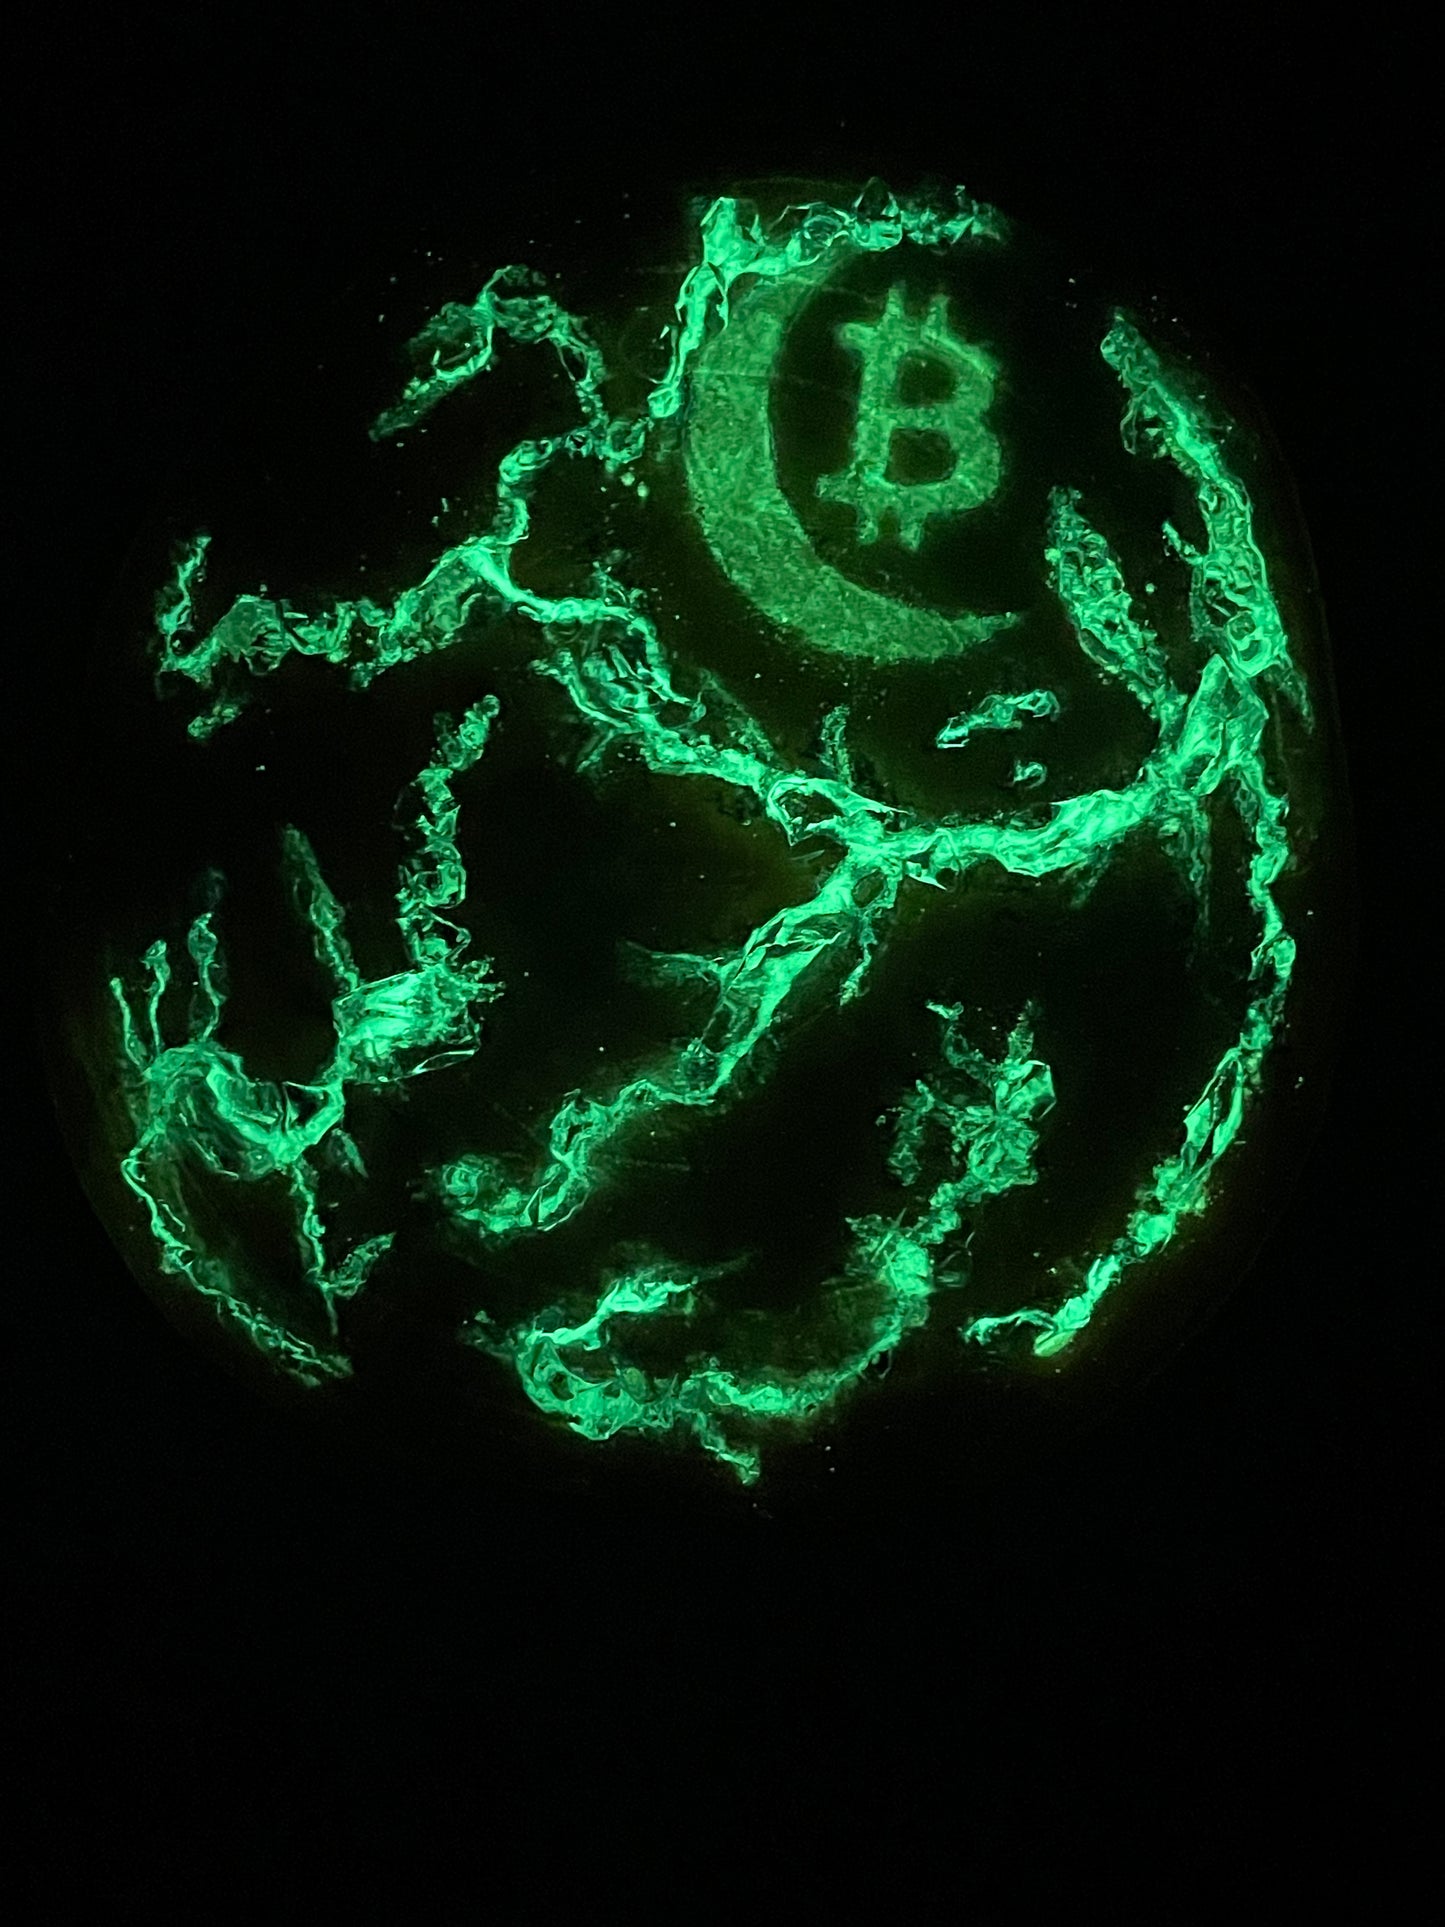 “Bitcoin on the Moon” series